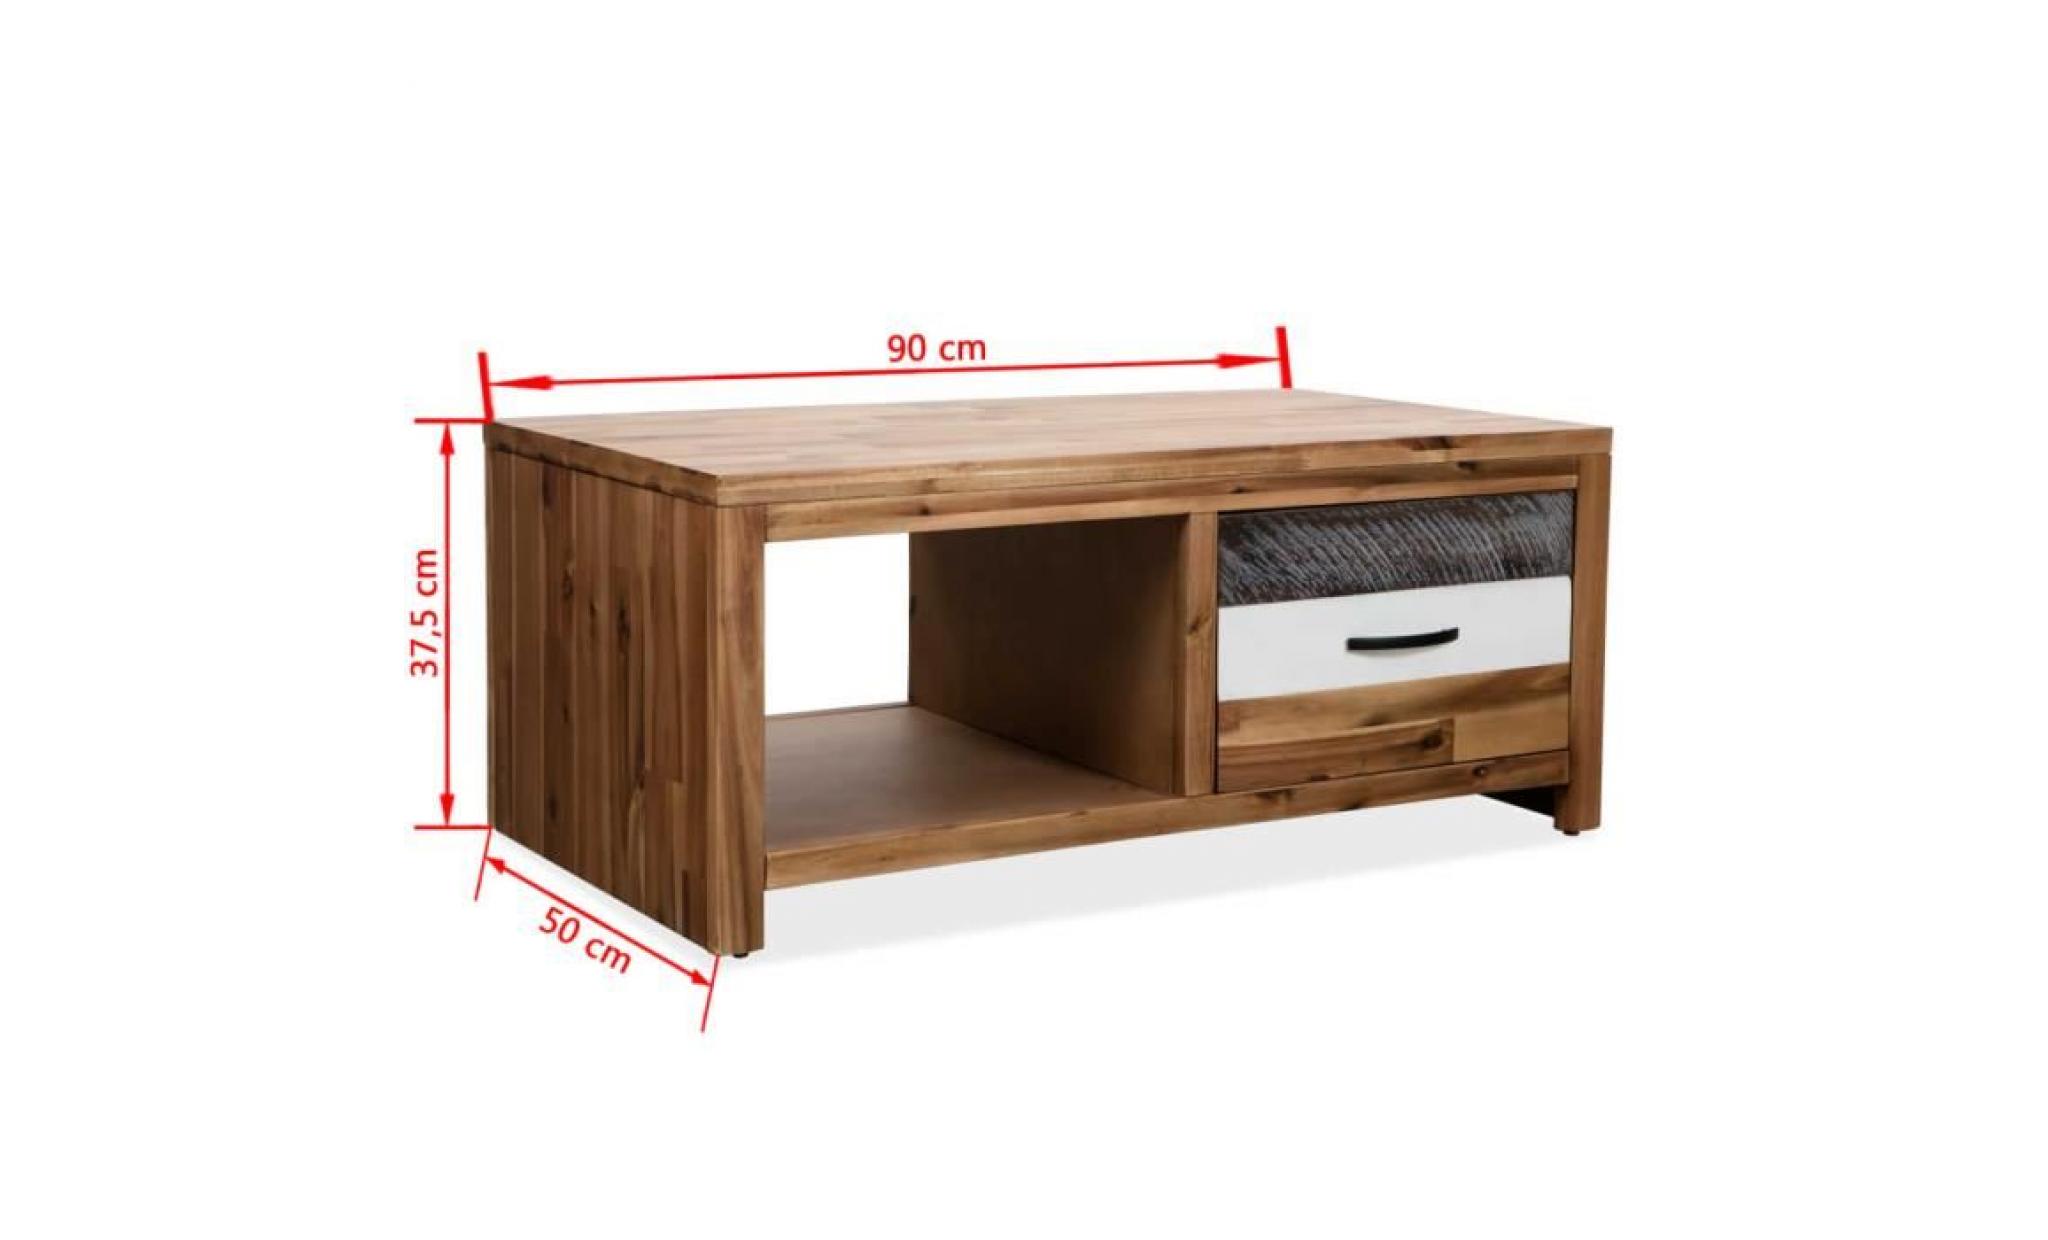 table basse vintage bois d'acacia massif 90 x 50 x 37,5 cm table basse pour salon bureau chambre balcon pas cher